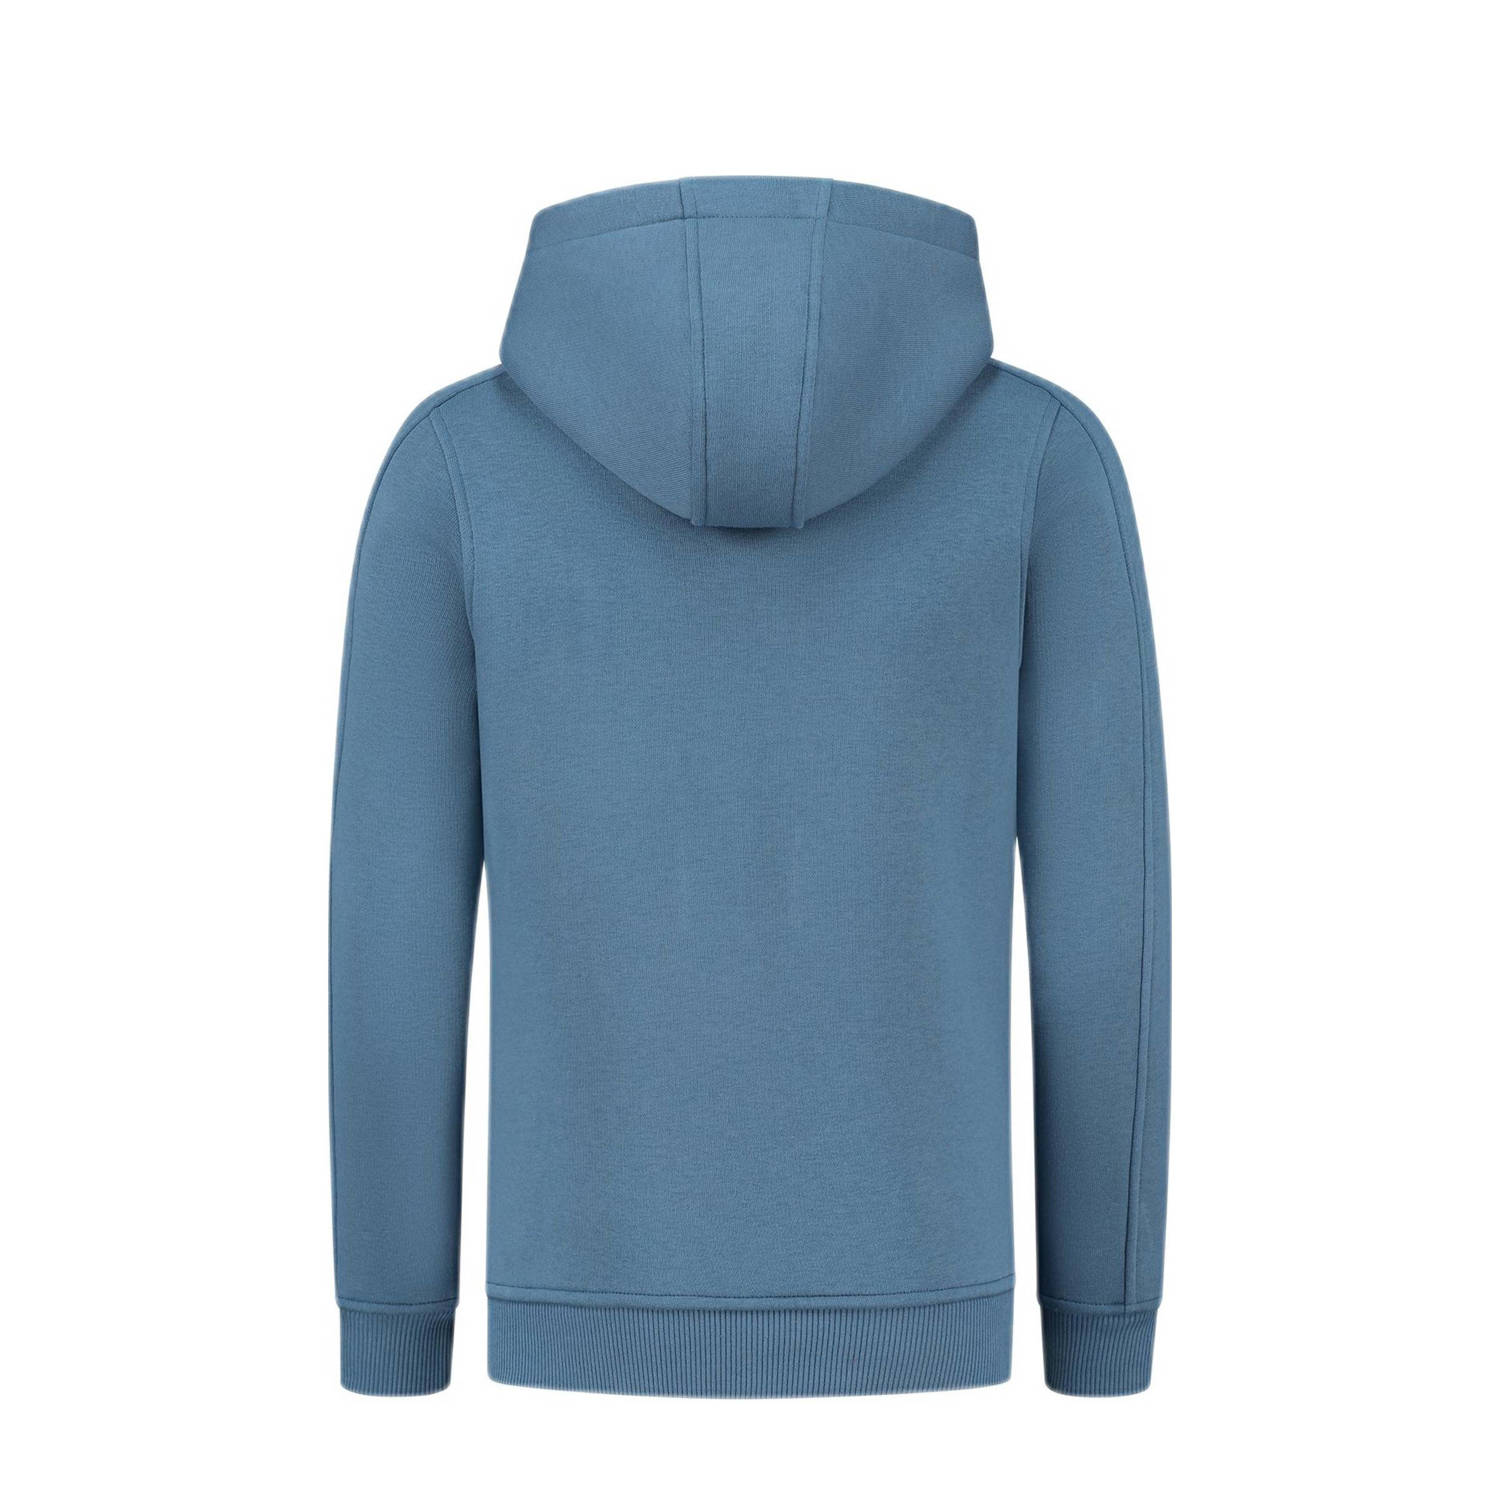 Ballin hoodie met logo middenblauw